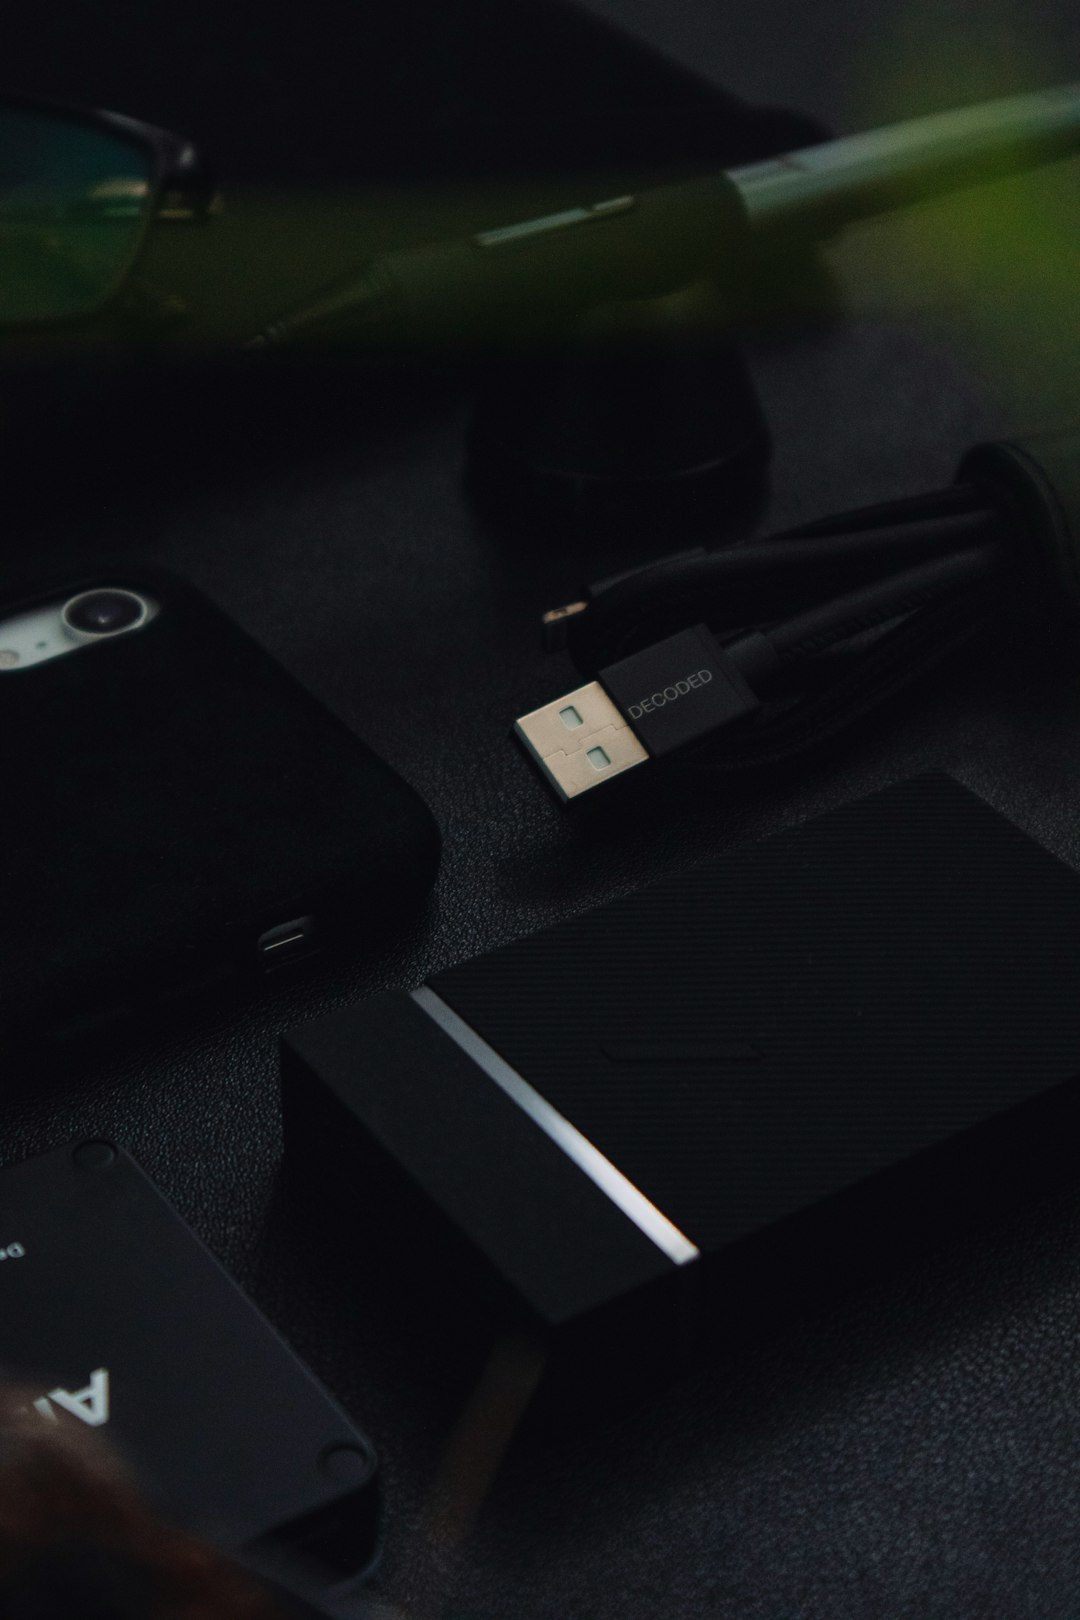 black iphone 5 c on black table